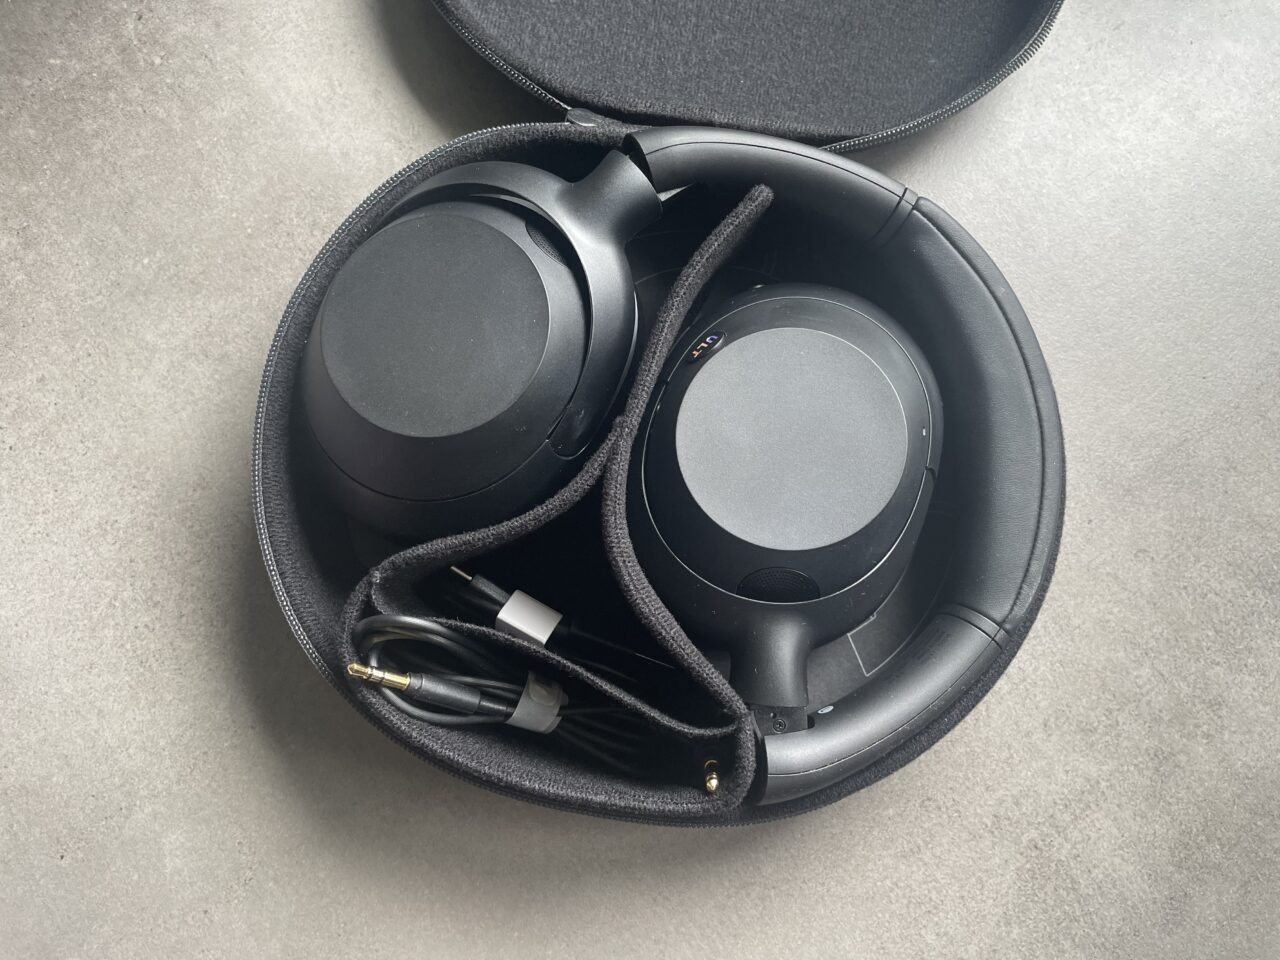 Bezprzewodowe słuchawki. Sony ULT Wear. Opakowanie i akcesoria 